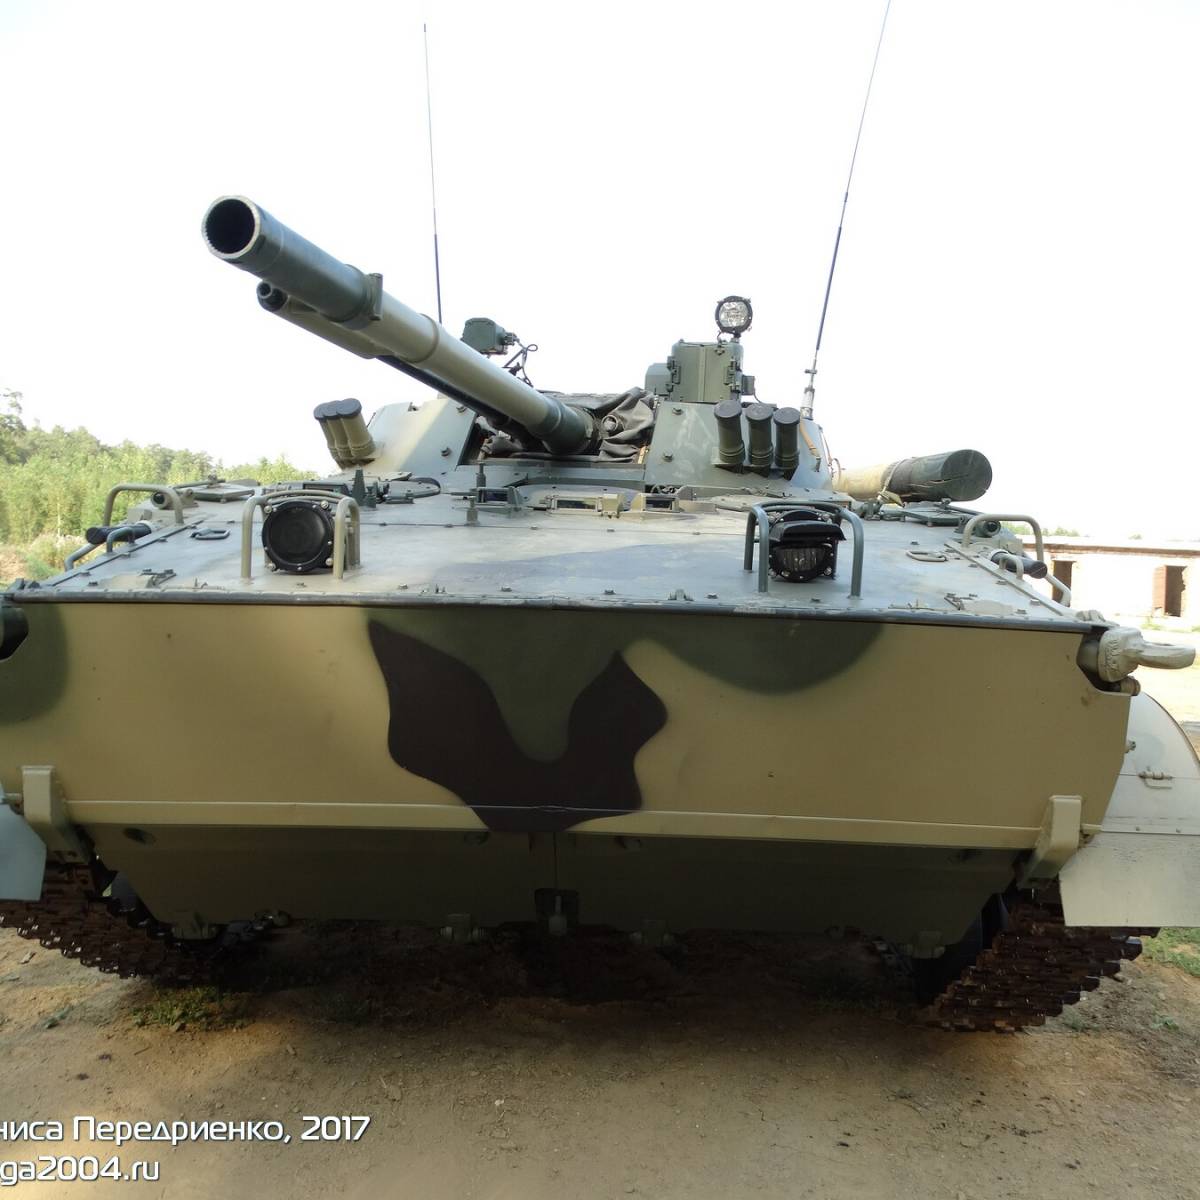 Боевая машина пехоты БМП-3 с прицелом «Содема» - фотообзор